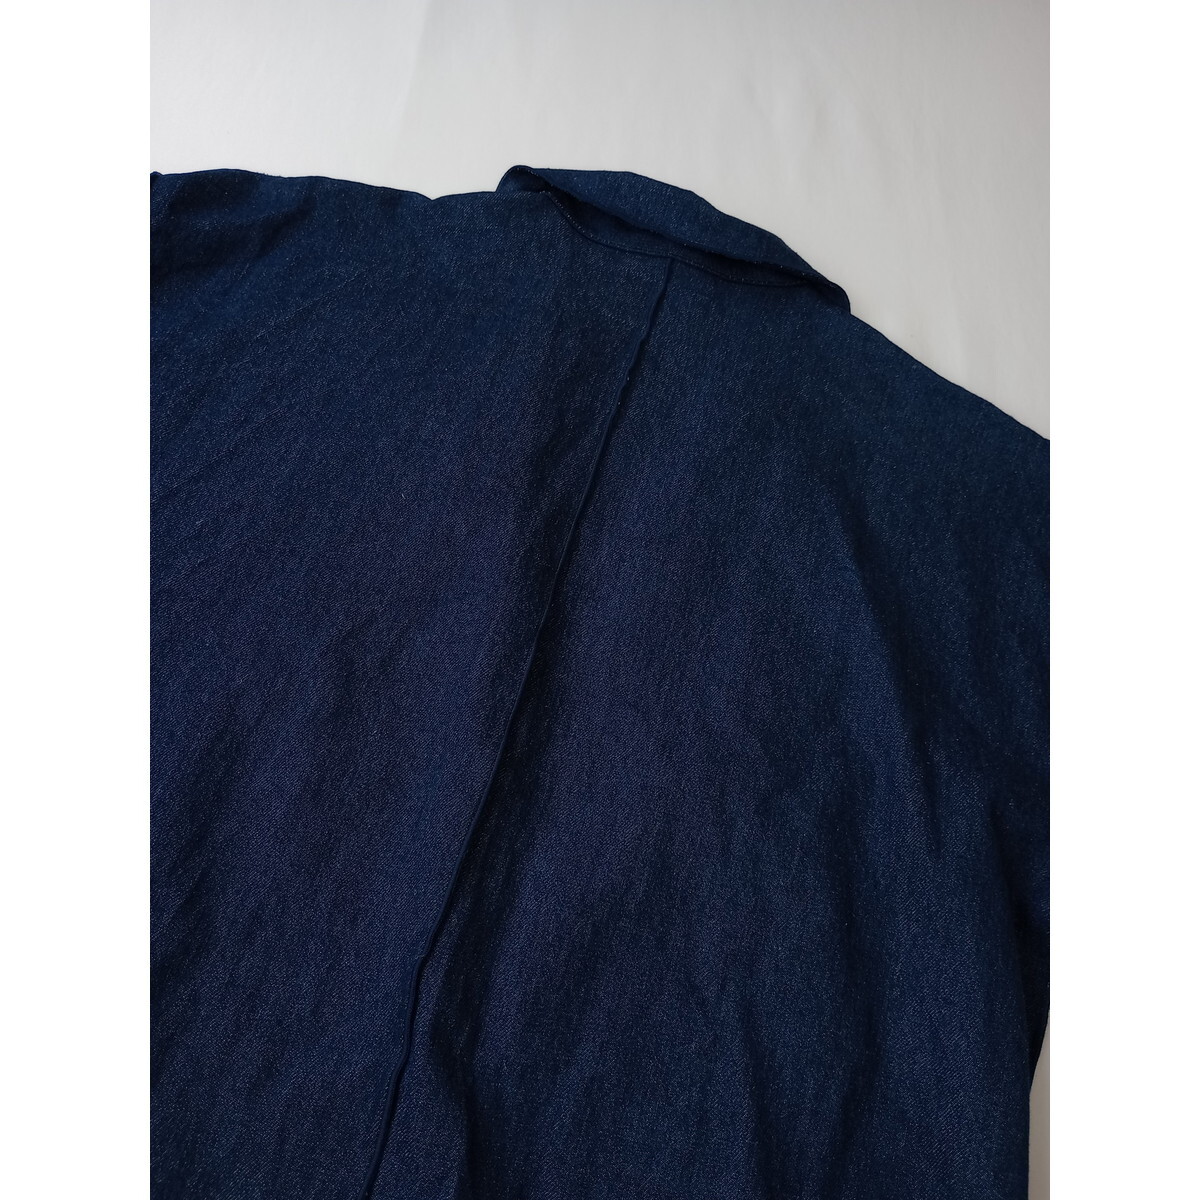 Kastane カスタネ「適度なゆるさとおしゃれ感。」オーバーサイズ ビックシルエット デニム ジャケット 羽織り (49K+0618)の画像3